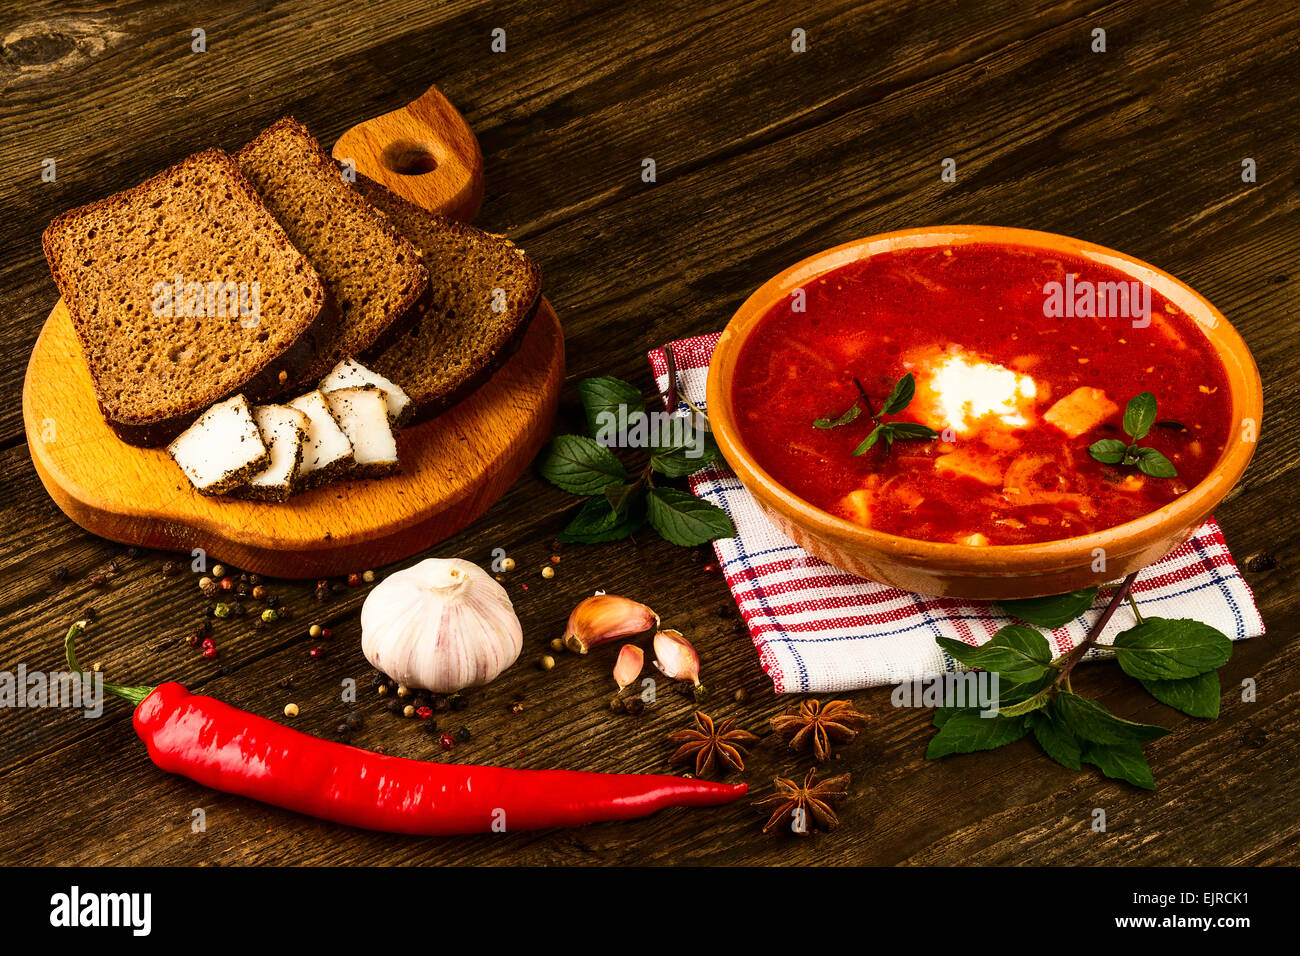 ukrainischen Borschtsch mit Paprika und Knoblauch auf hölzernen Hintergrund Stockfoto